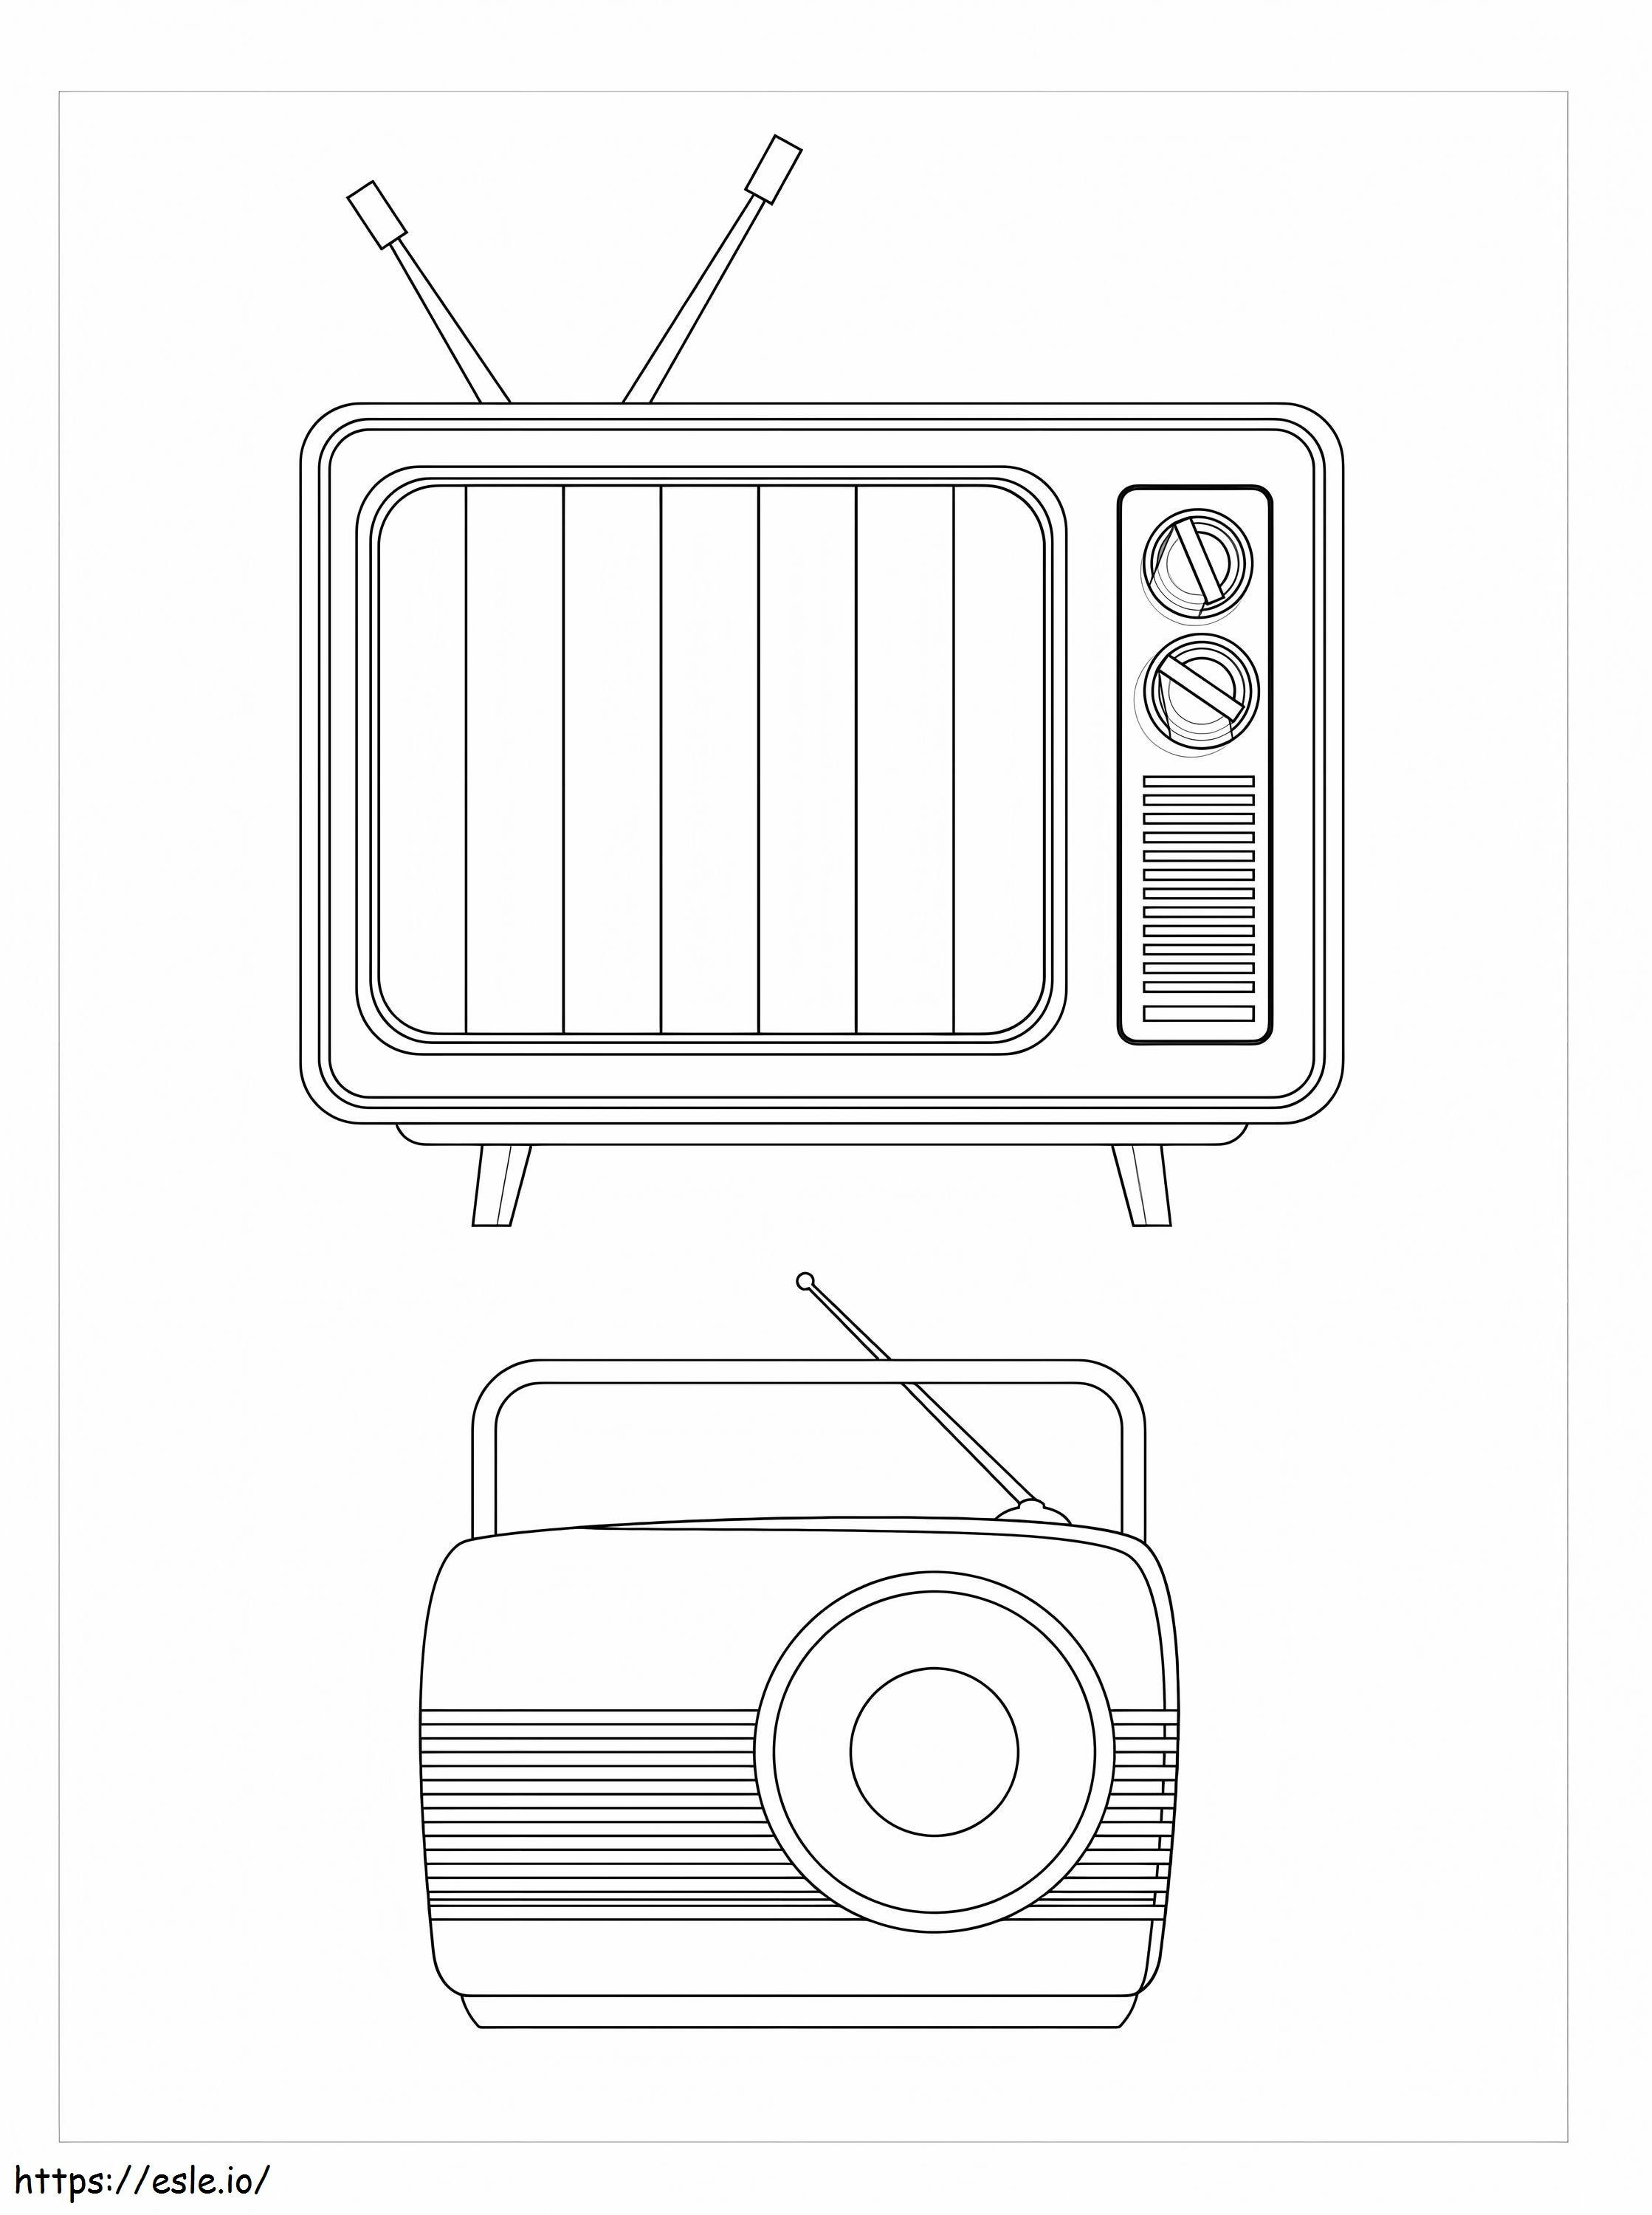 Televisione e radio da colorare